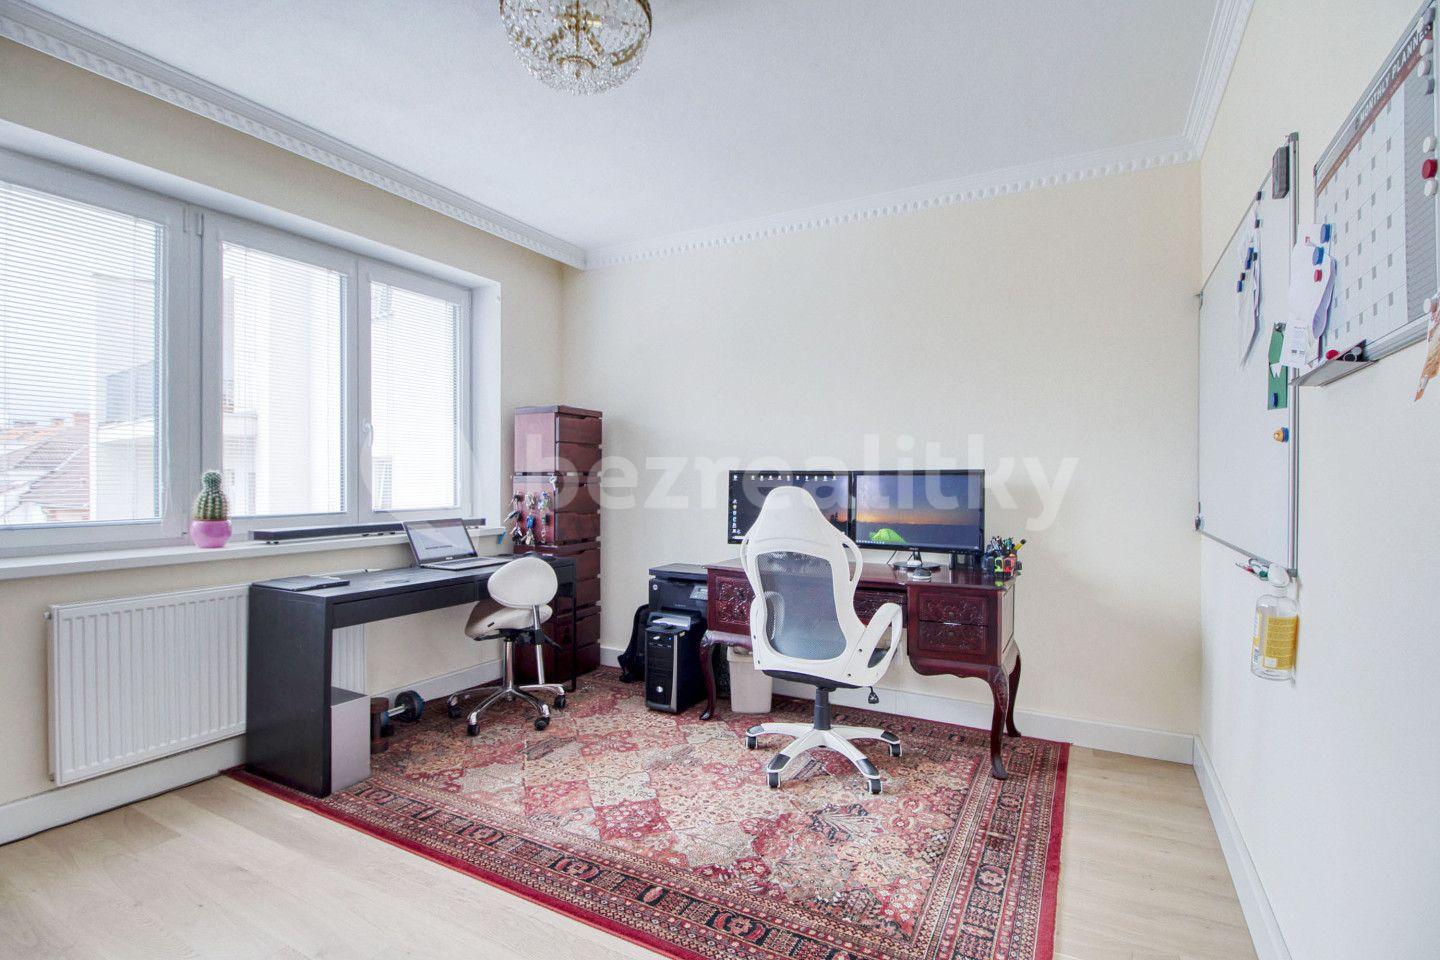 2 bedroom with open-plan kitchen flat for sale, 84 m², Plzeň, Plzeňský Region